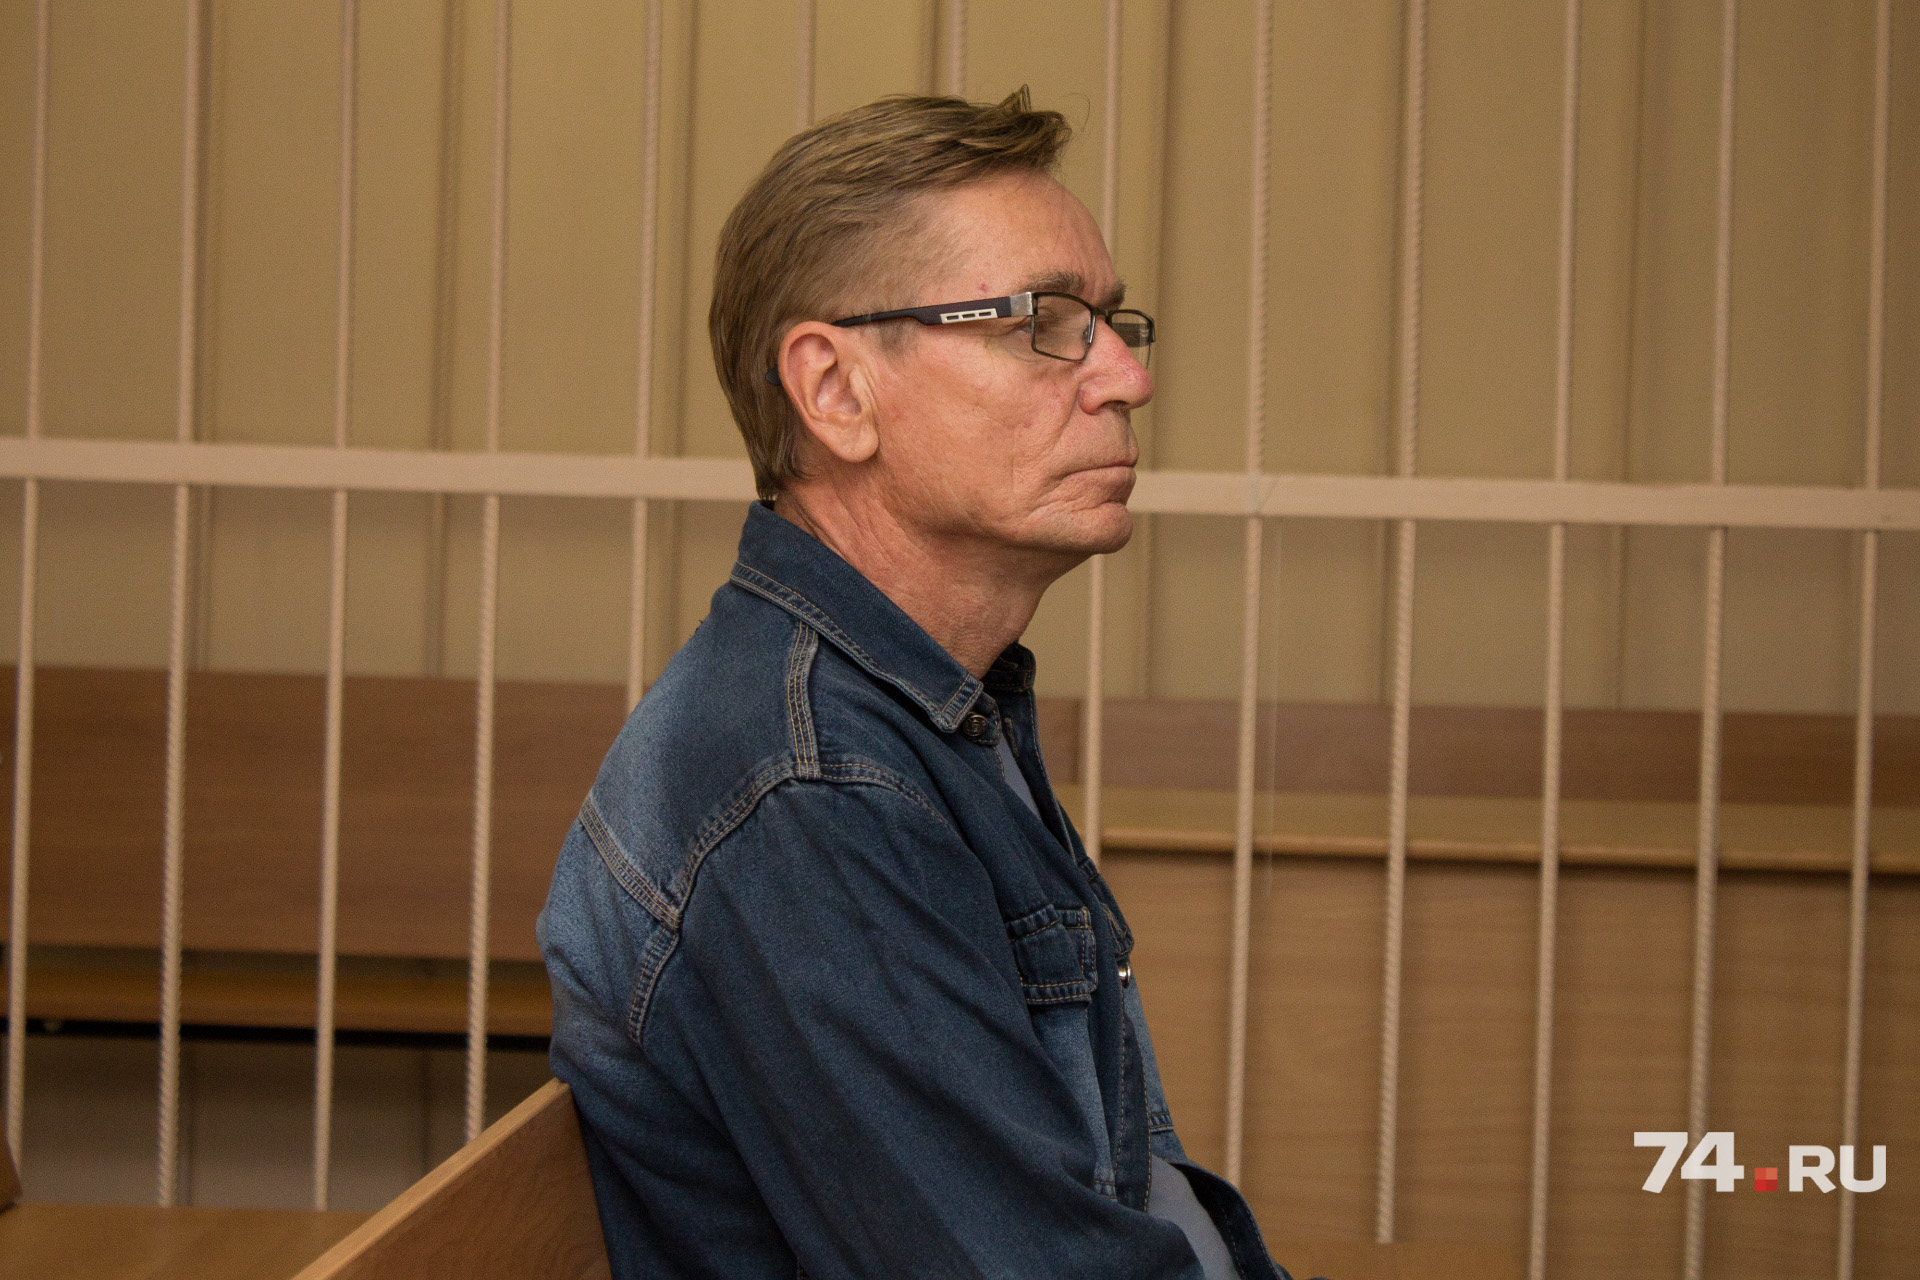 Сергею Колисниченко грозит до 10 лет лишения свободы за хищение куска метеорита